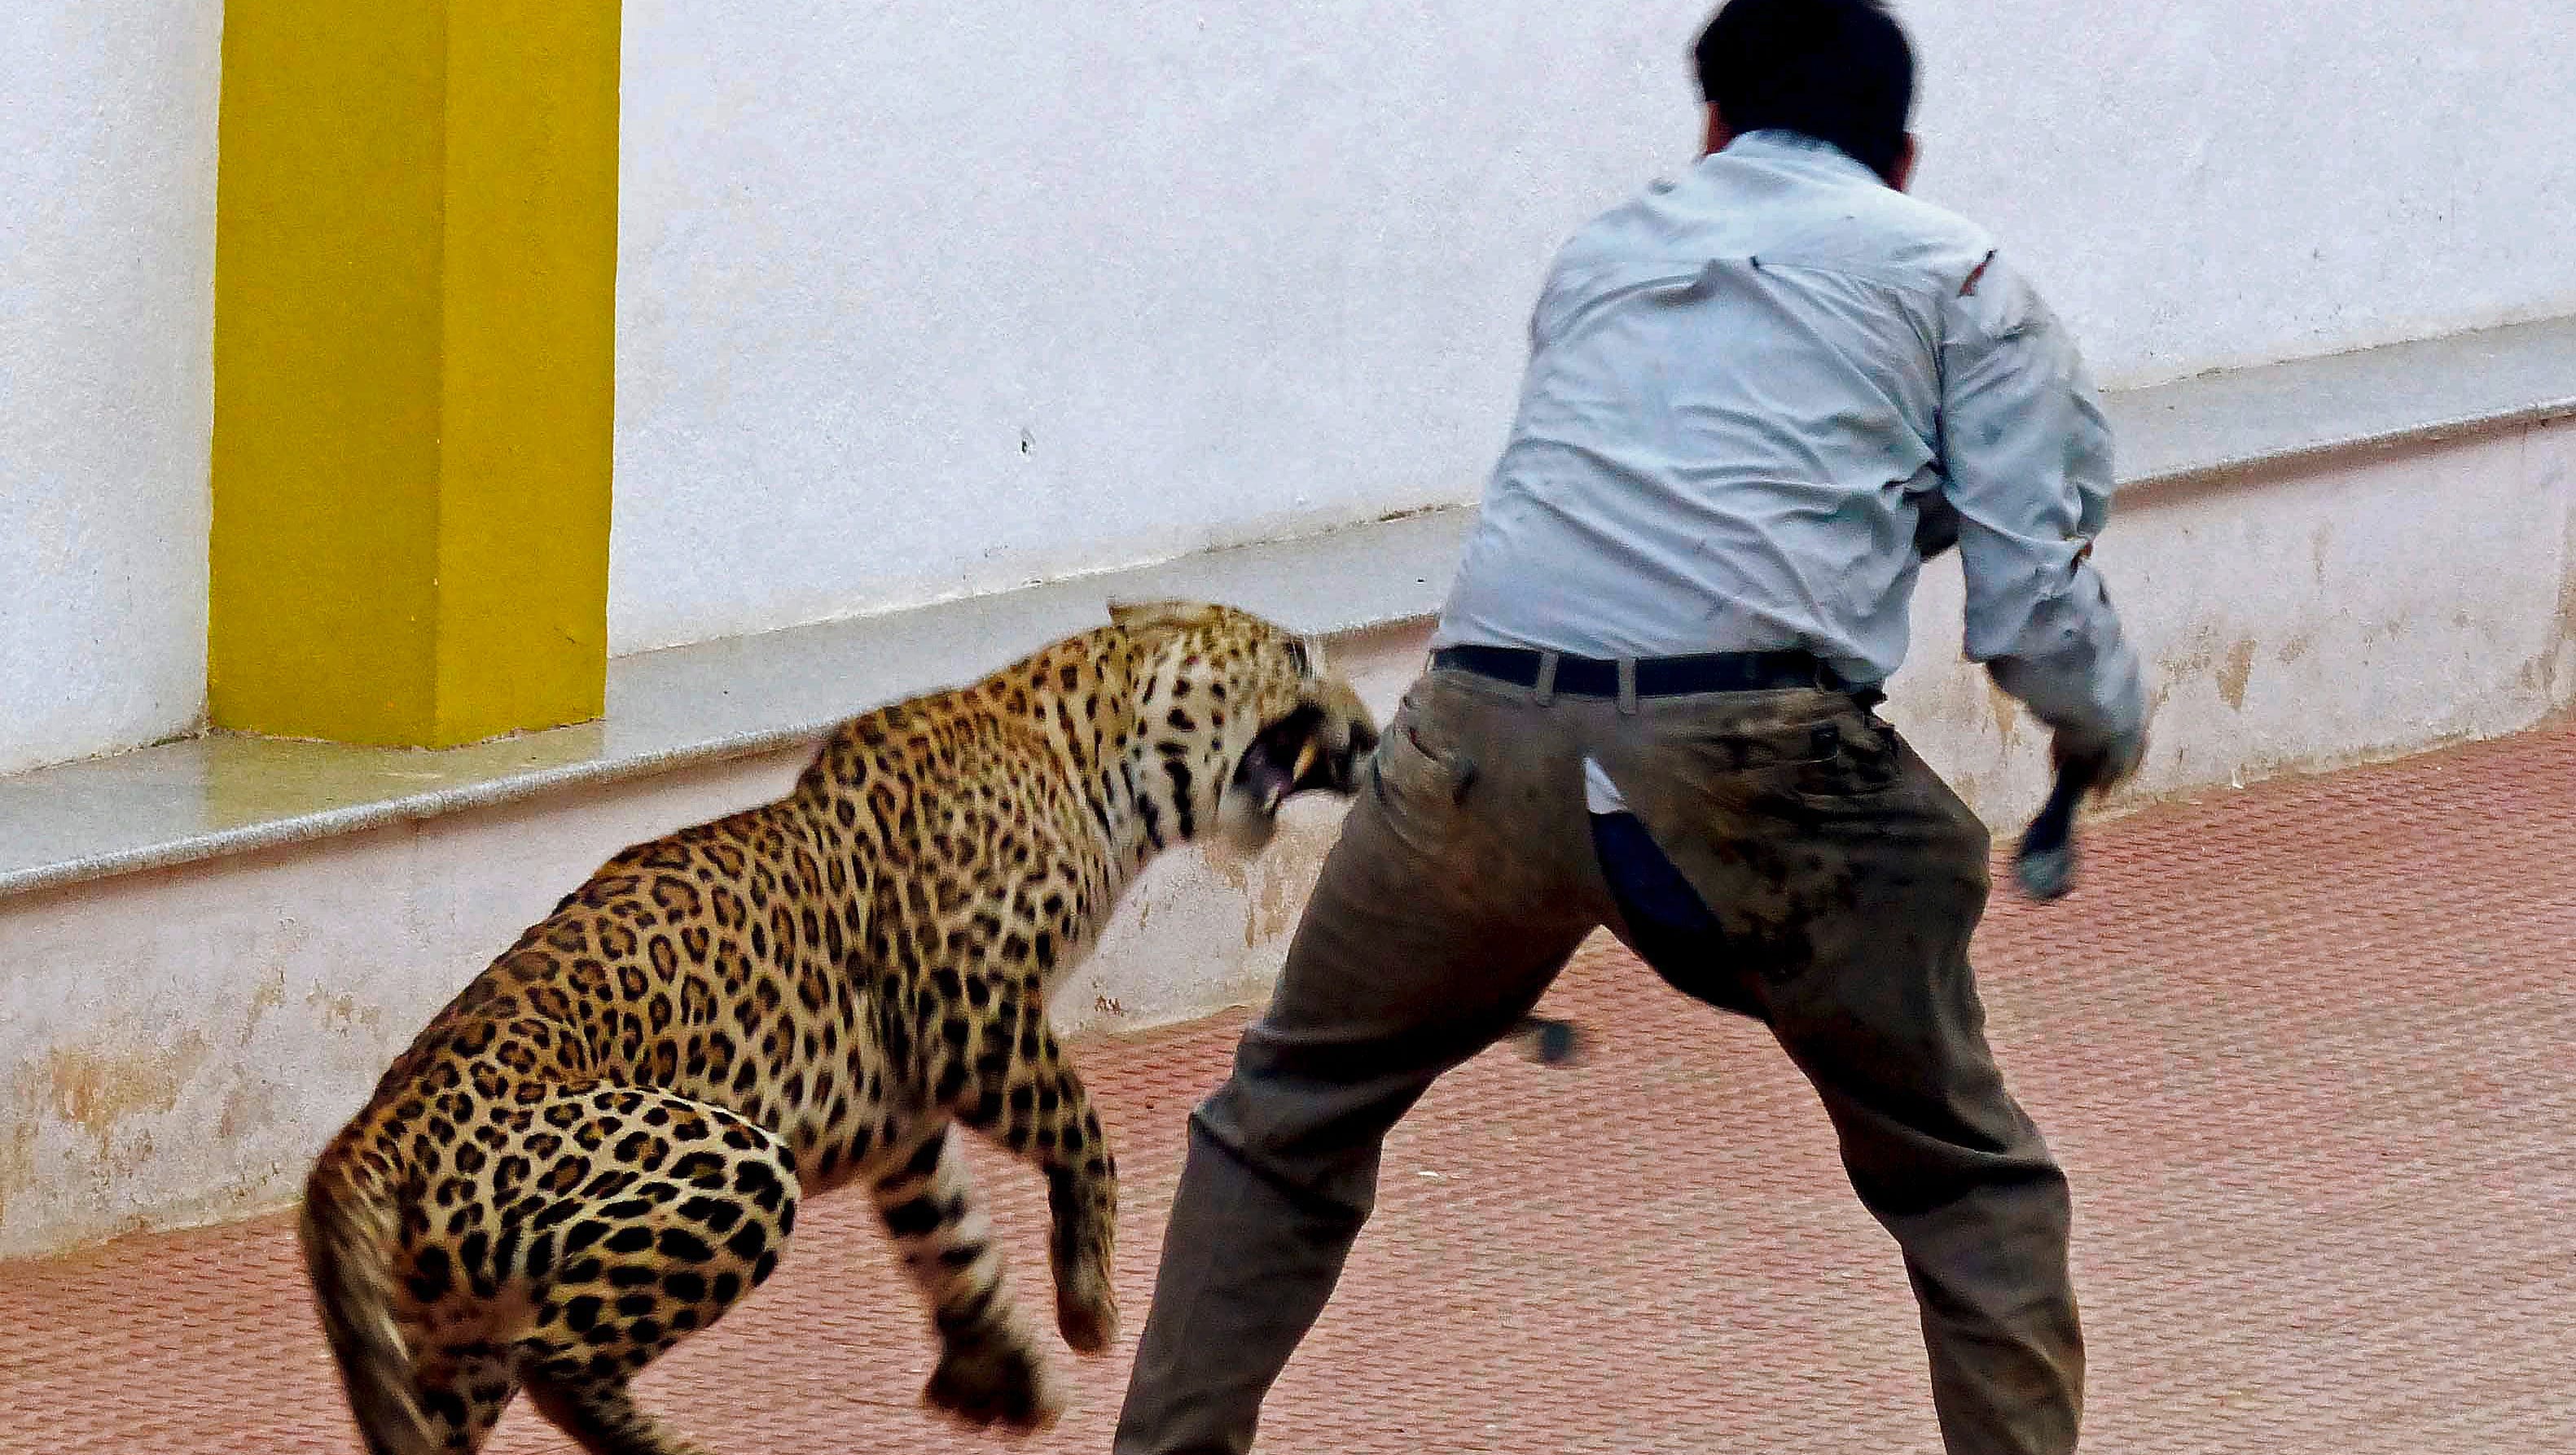 Нападение на человека. Нападение диких животных. Ягуар нападает на человека. Животные нападают на людей.